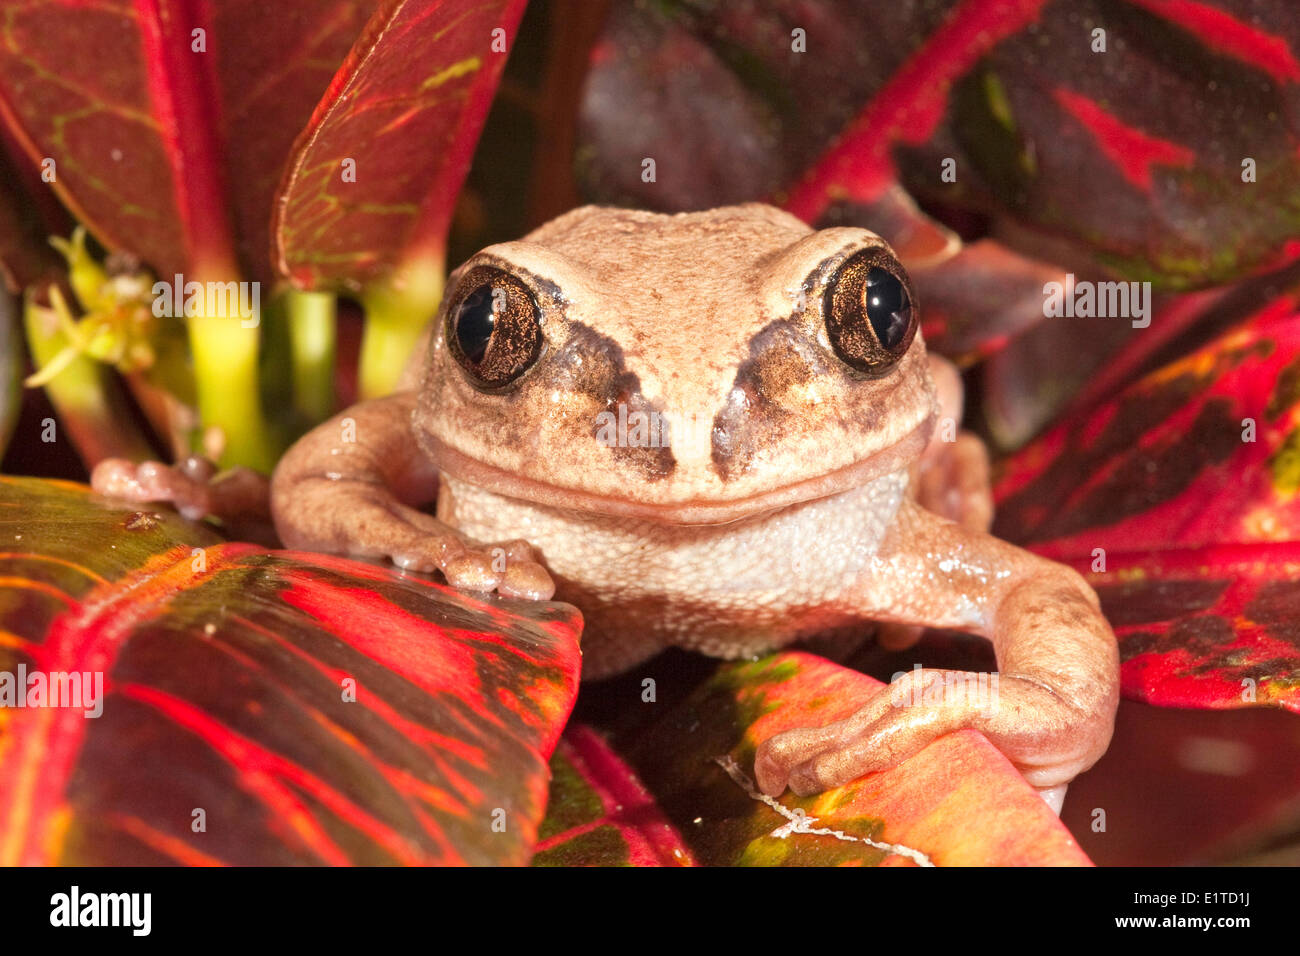 Foto de un marrón-respaldado Tree Frog Foto de stock